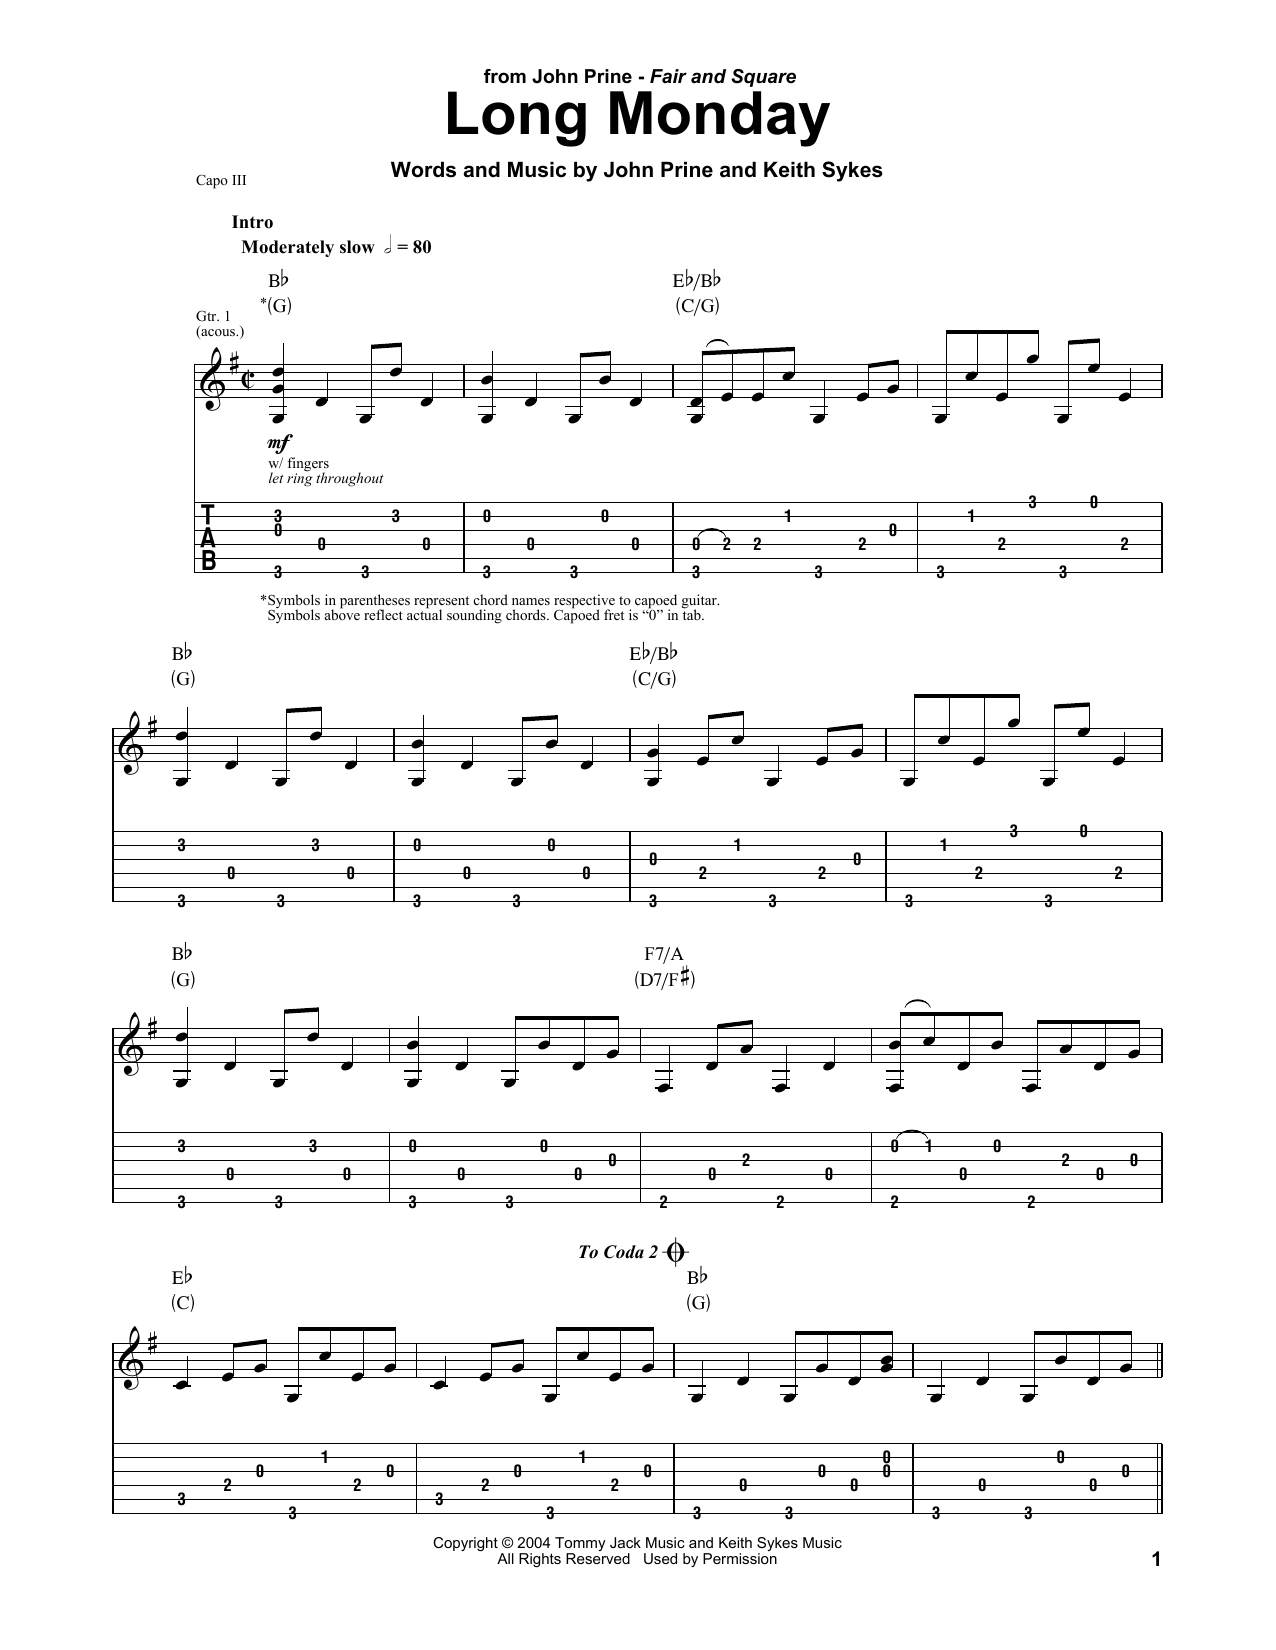 John Prine Long Monday Sheet Music Notes & Chords for Ukulele - Download or Print PDF